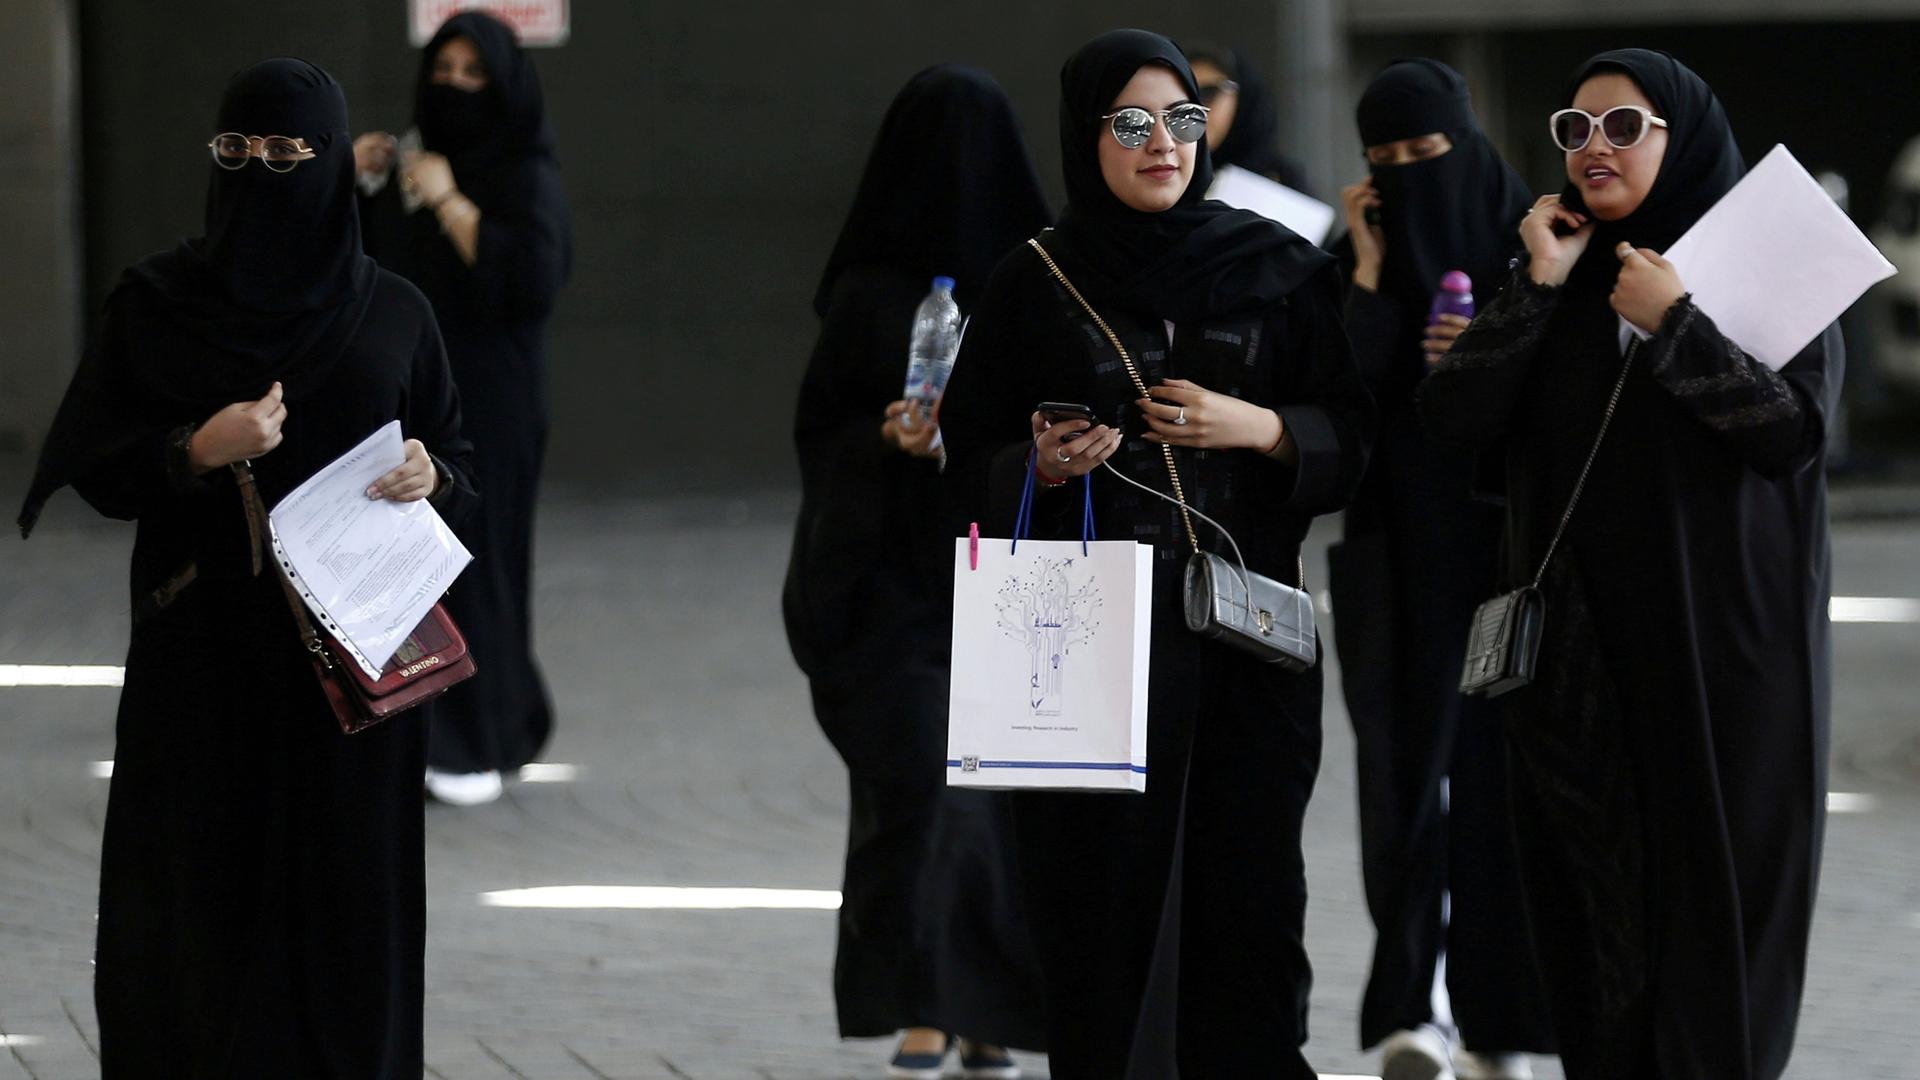 Saudi women gather at a job fair in Riyadh.